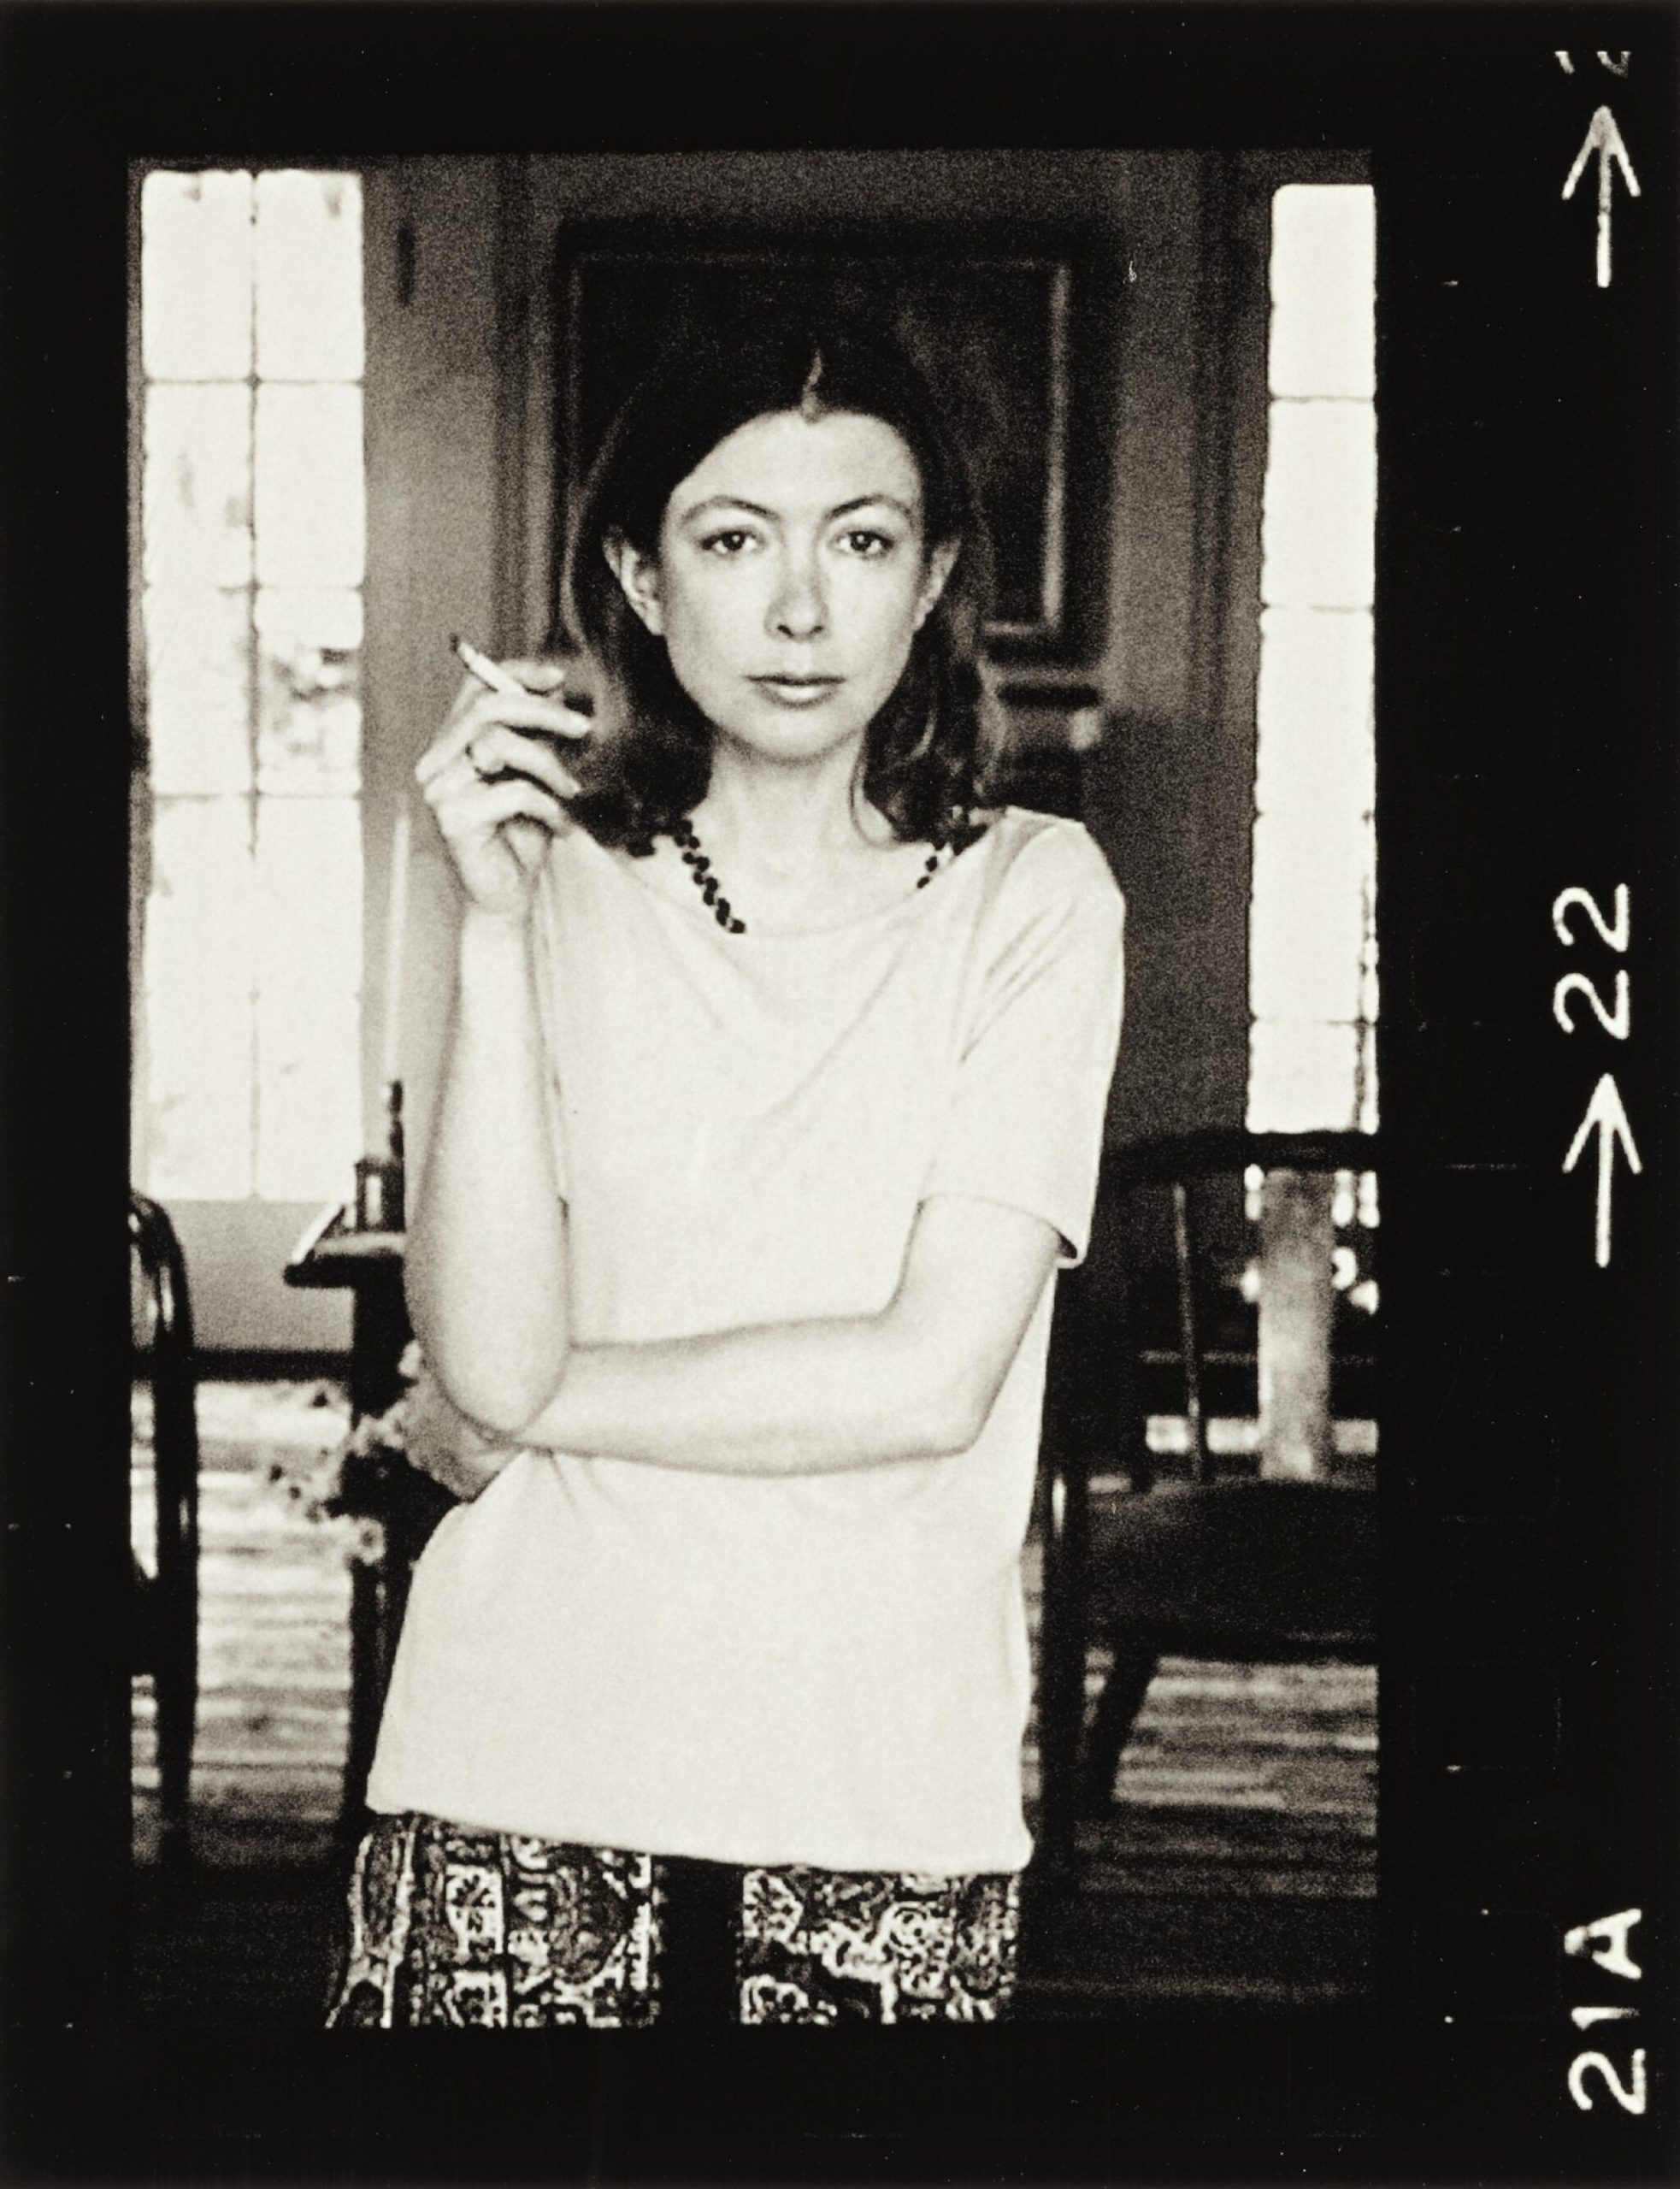 chân dung Joan Didion trong trang phục ở nhà